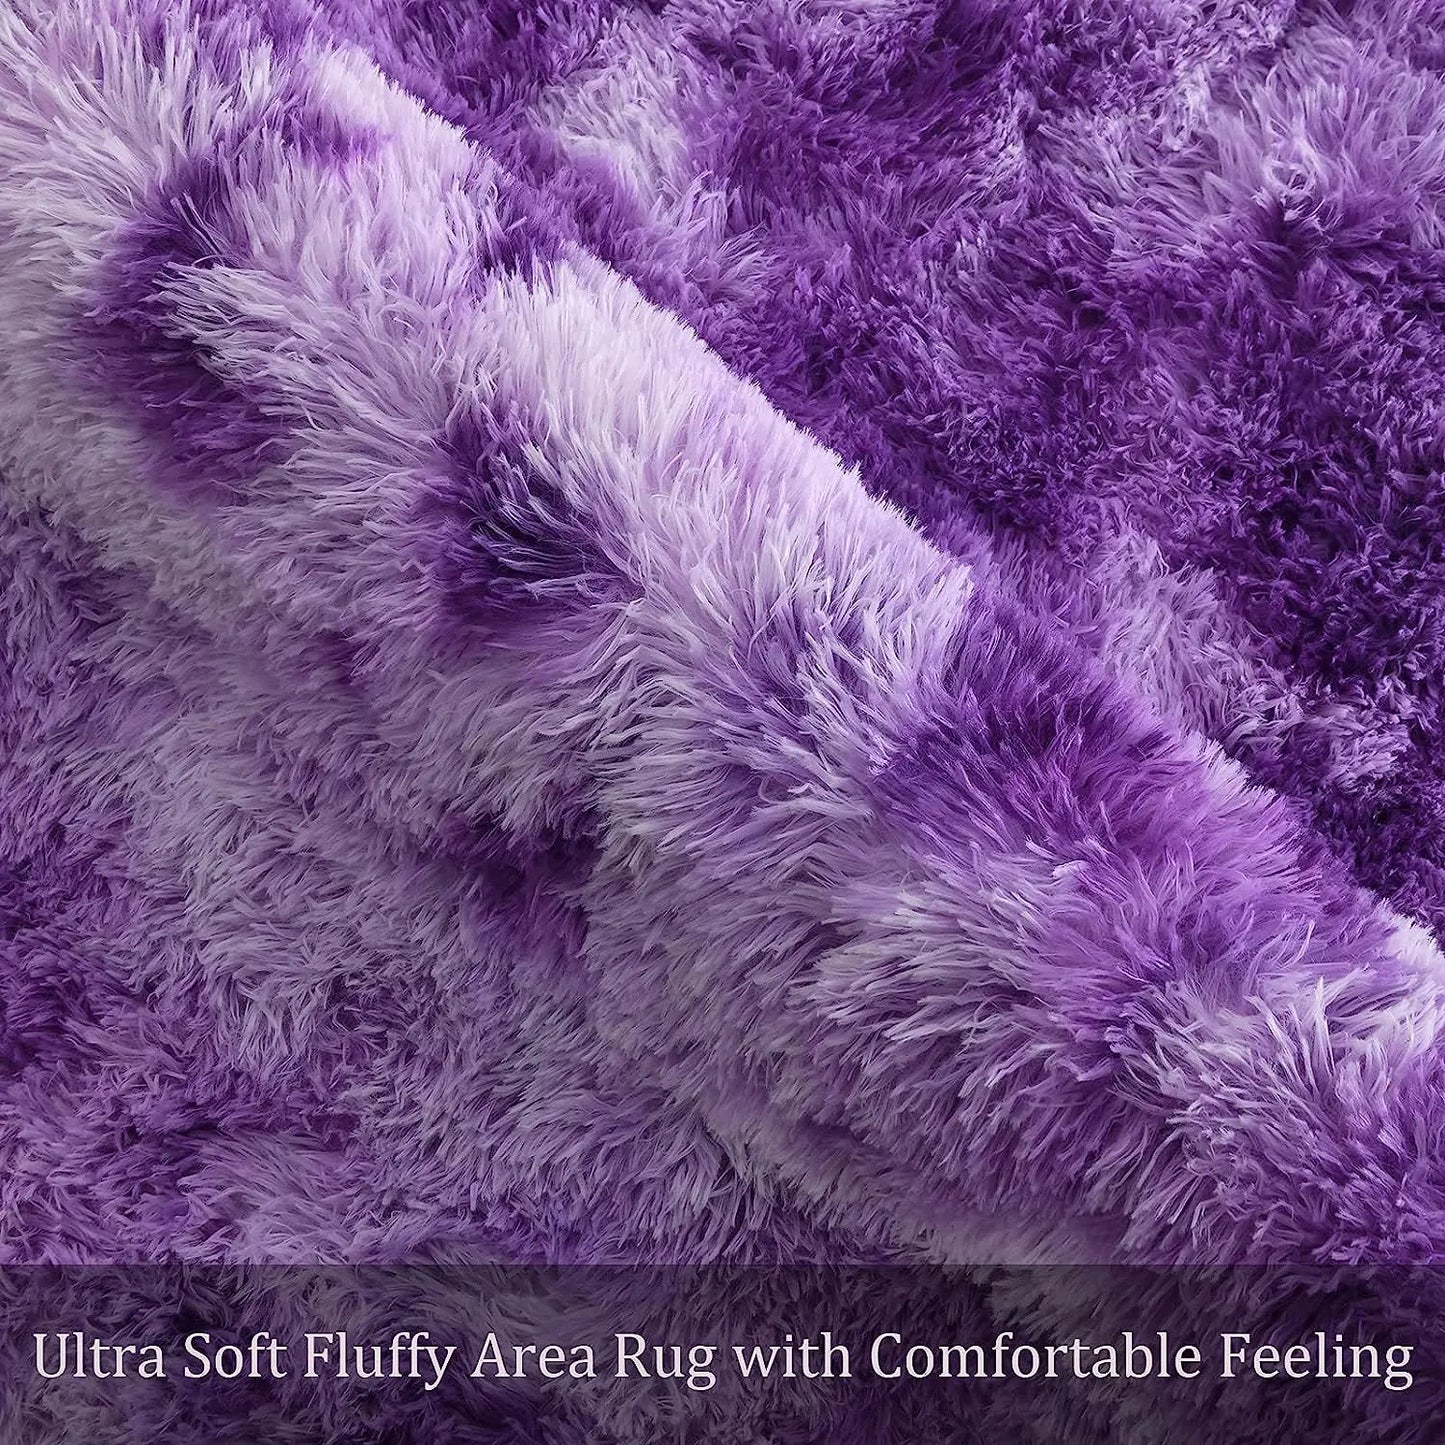 Fluffy Shaggy Rug Dorm Carpet Area Rug for Kids Room Living Room Soft Shaggy Nursery Rug Furry Floor Carpet Modern Decor Cute